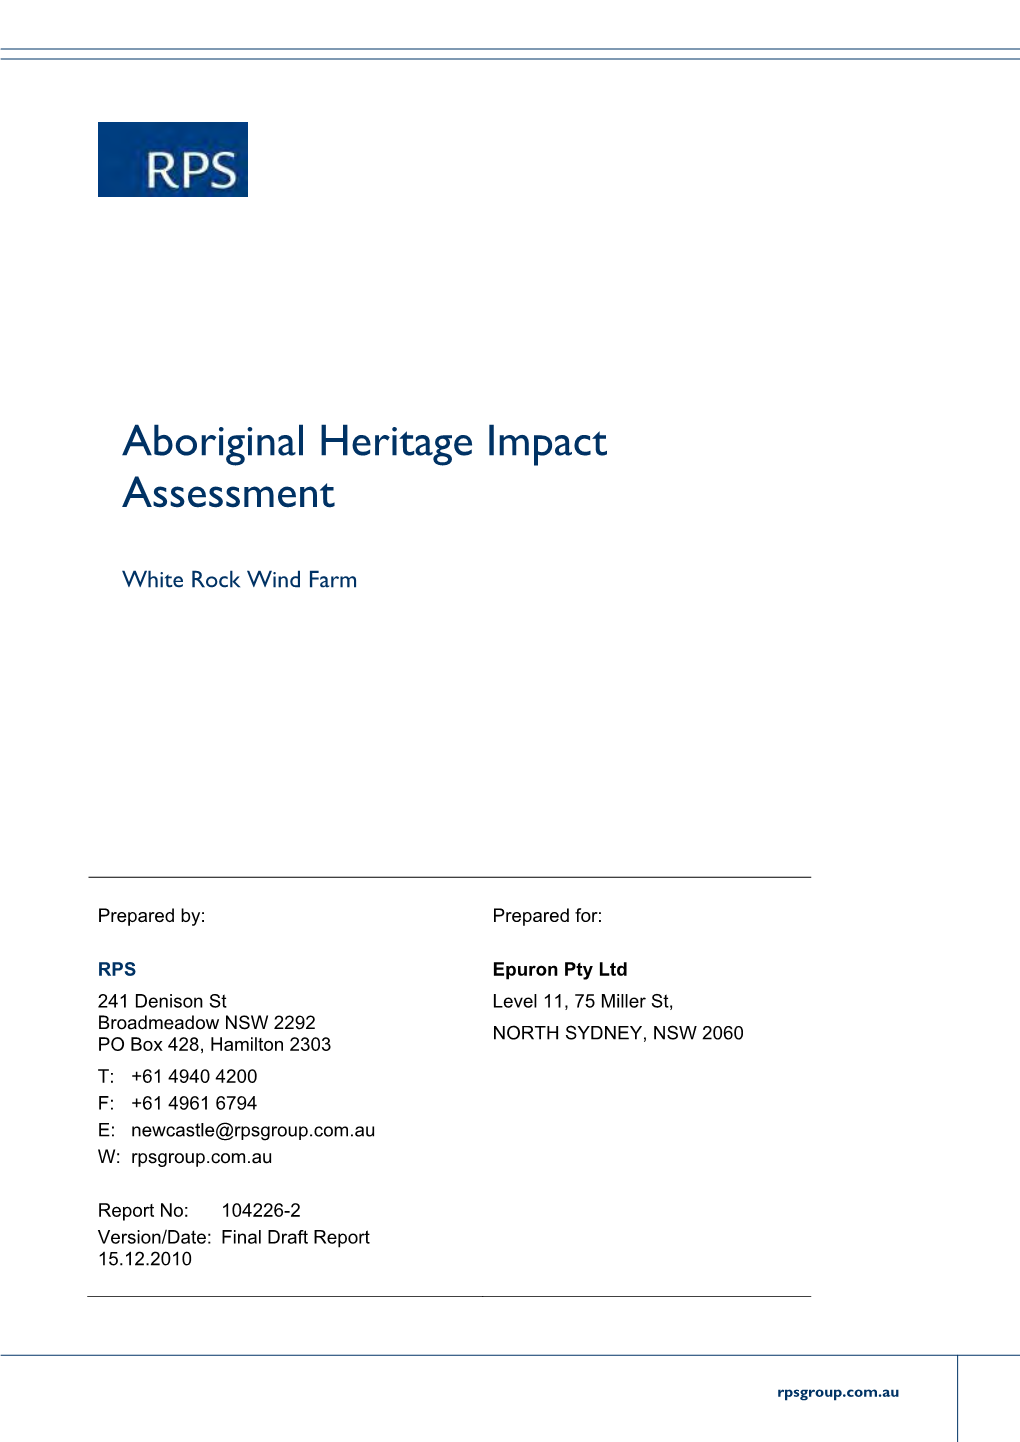 Aboriginal Heritage Impact Assessment